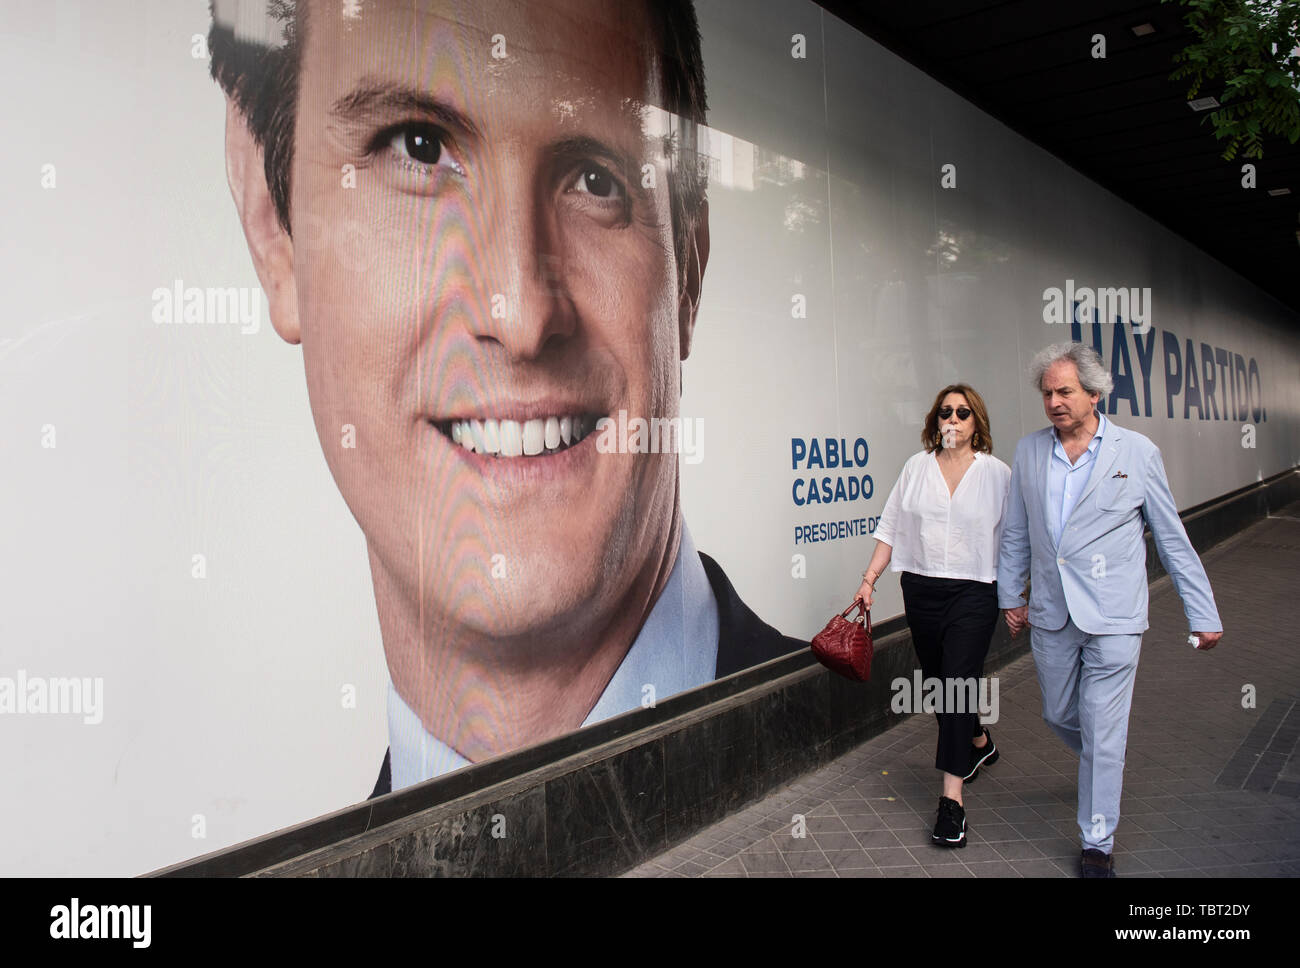 Fußgänger vorbei an einem großen Bild von Pablo Casado, der Führer des Partido Popular (PP) in der Zentrale der Partei vor dem Lokal, Regional- und Europawahlen. Stockfoto